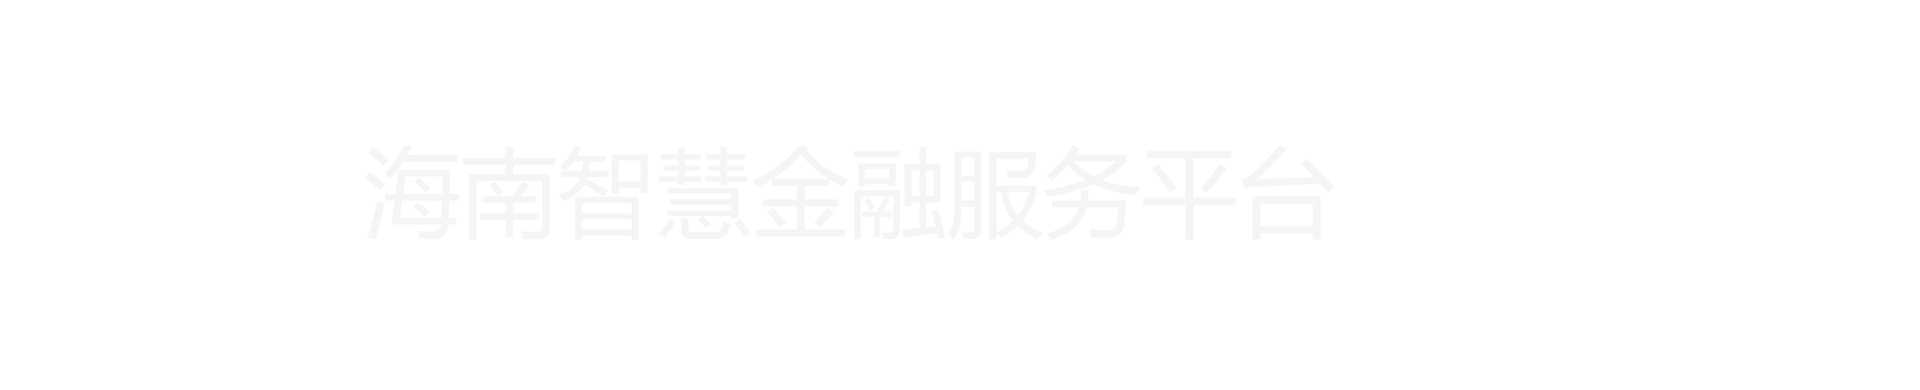 海南省智慧金融综合服务平台